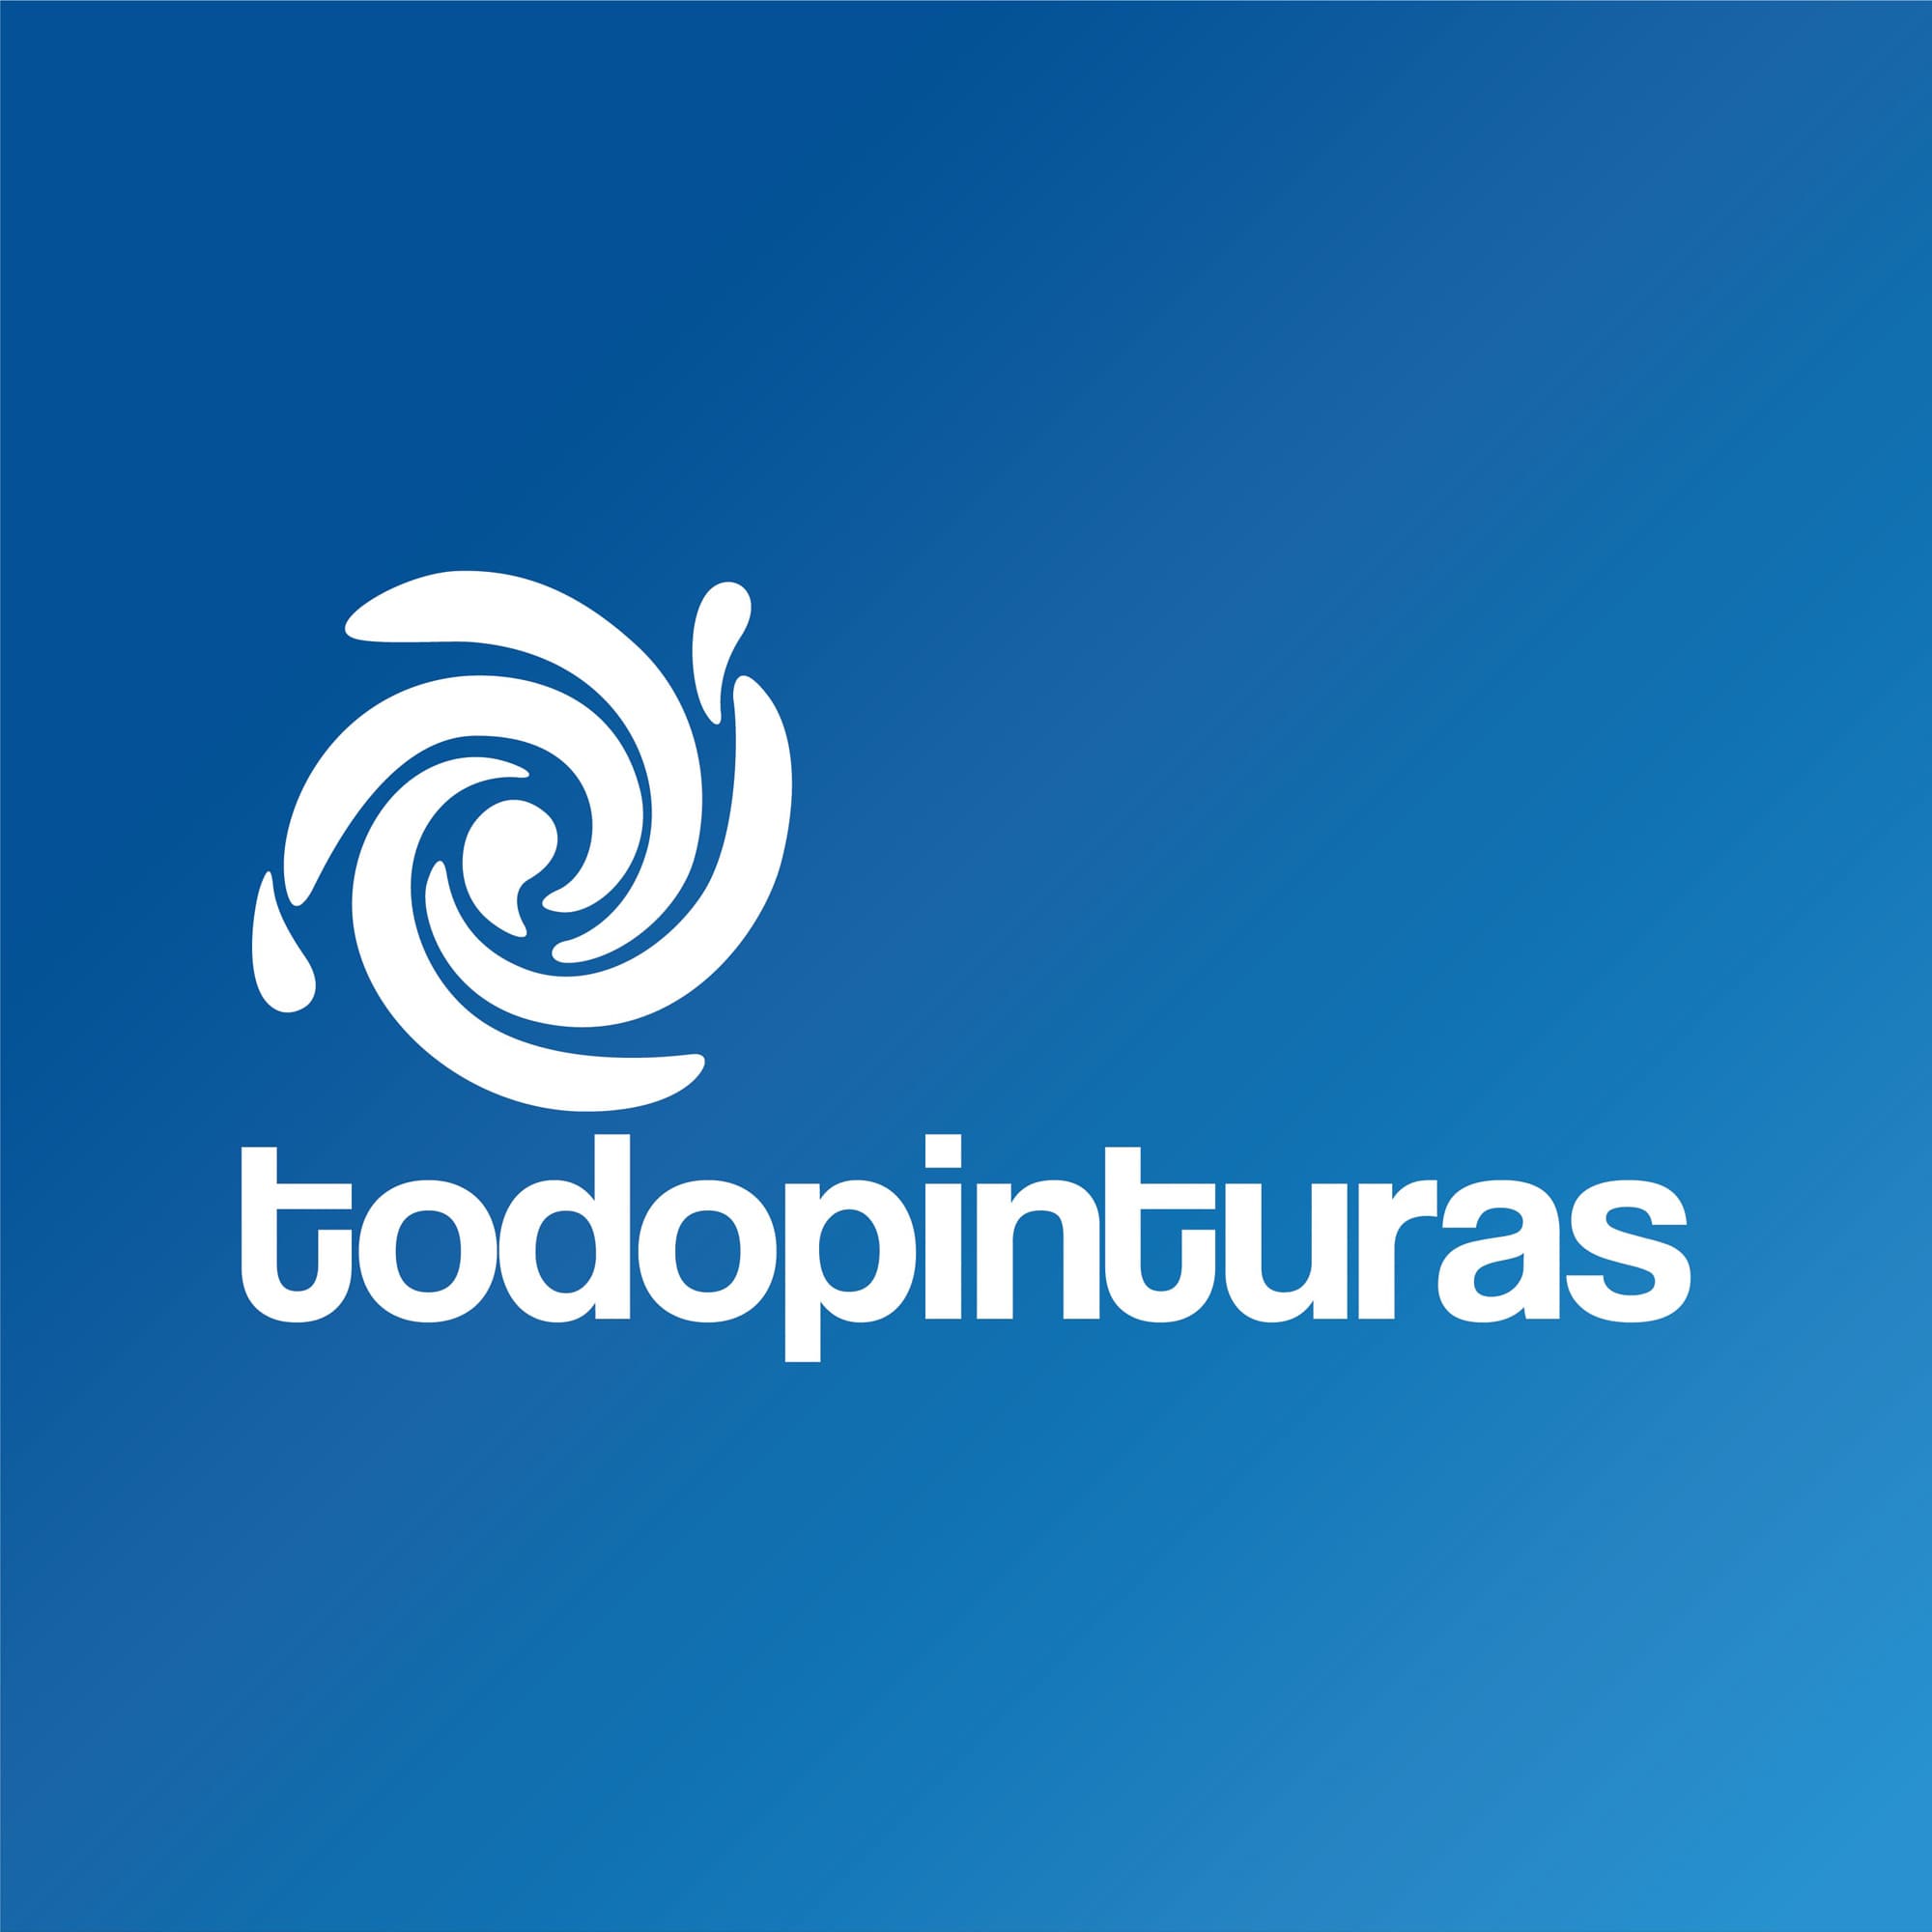 Logotipo de Todopinturas en blanco con fondo azul